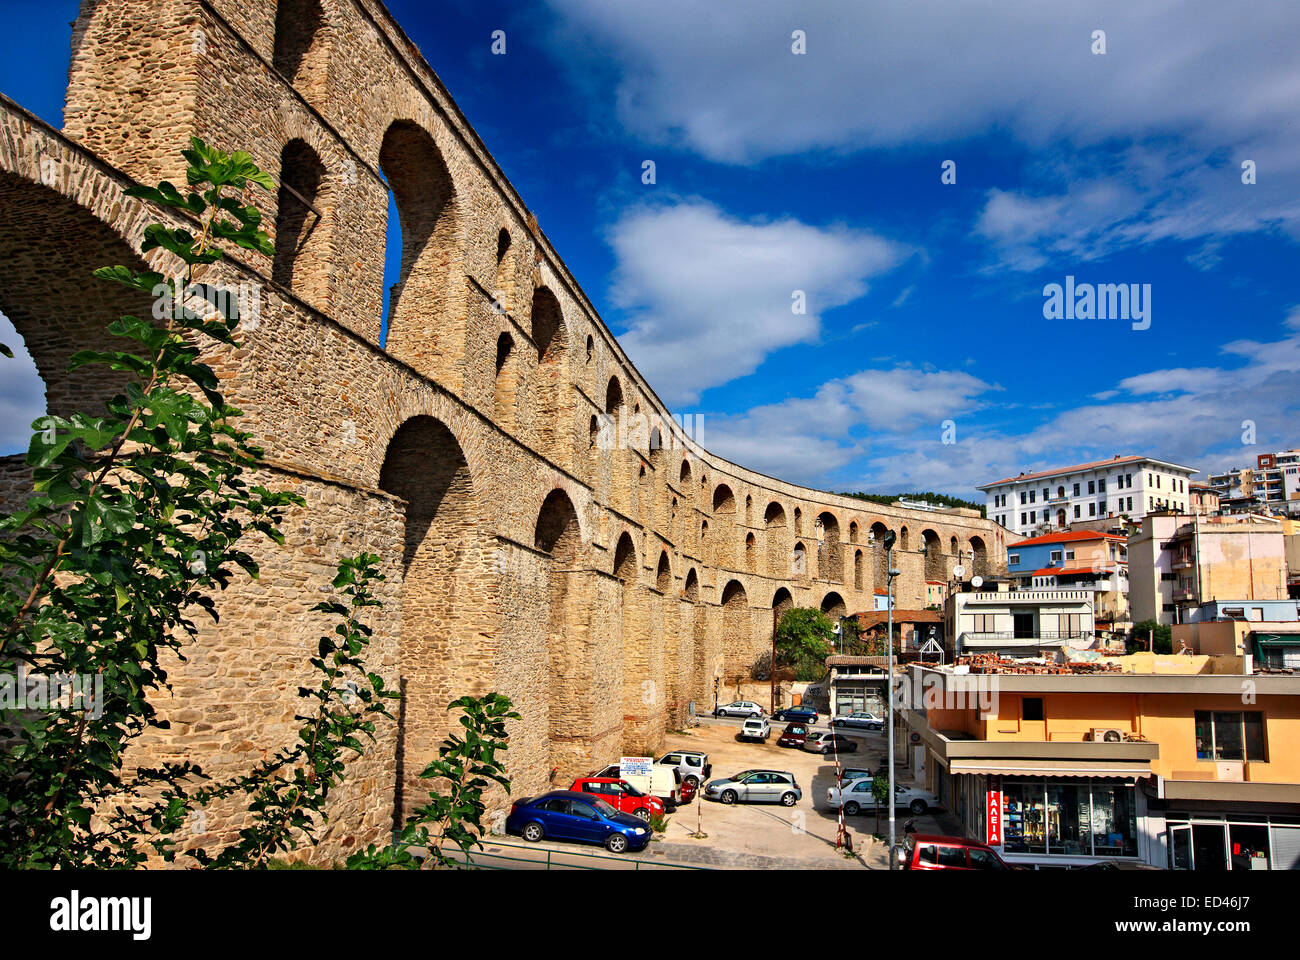 L '62164' ( ='arches"), le célèbre aqueduc de la ville de Kavala, Macédoine, Grèce. Banque D'Images